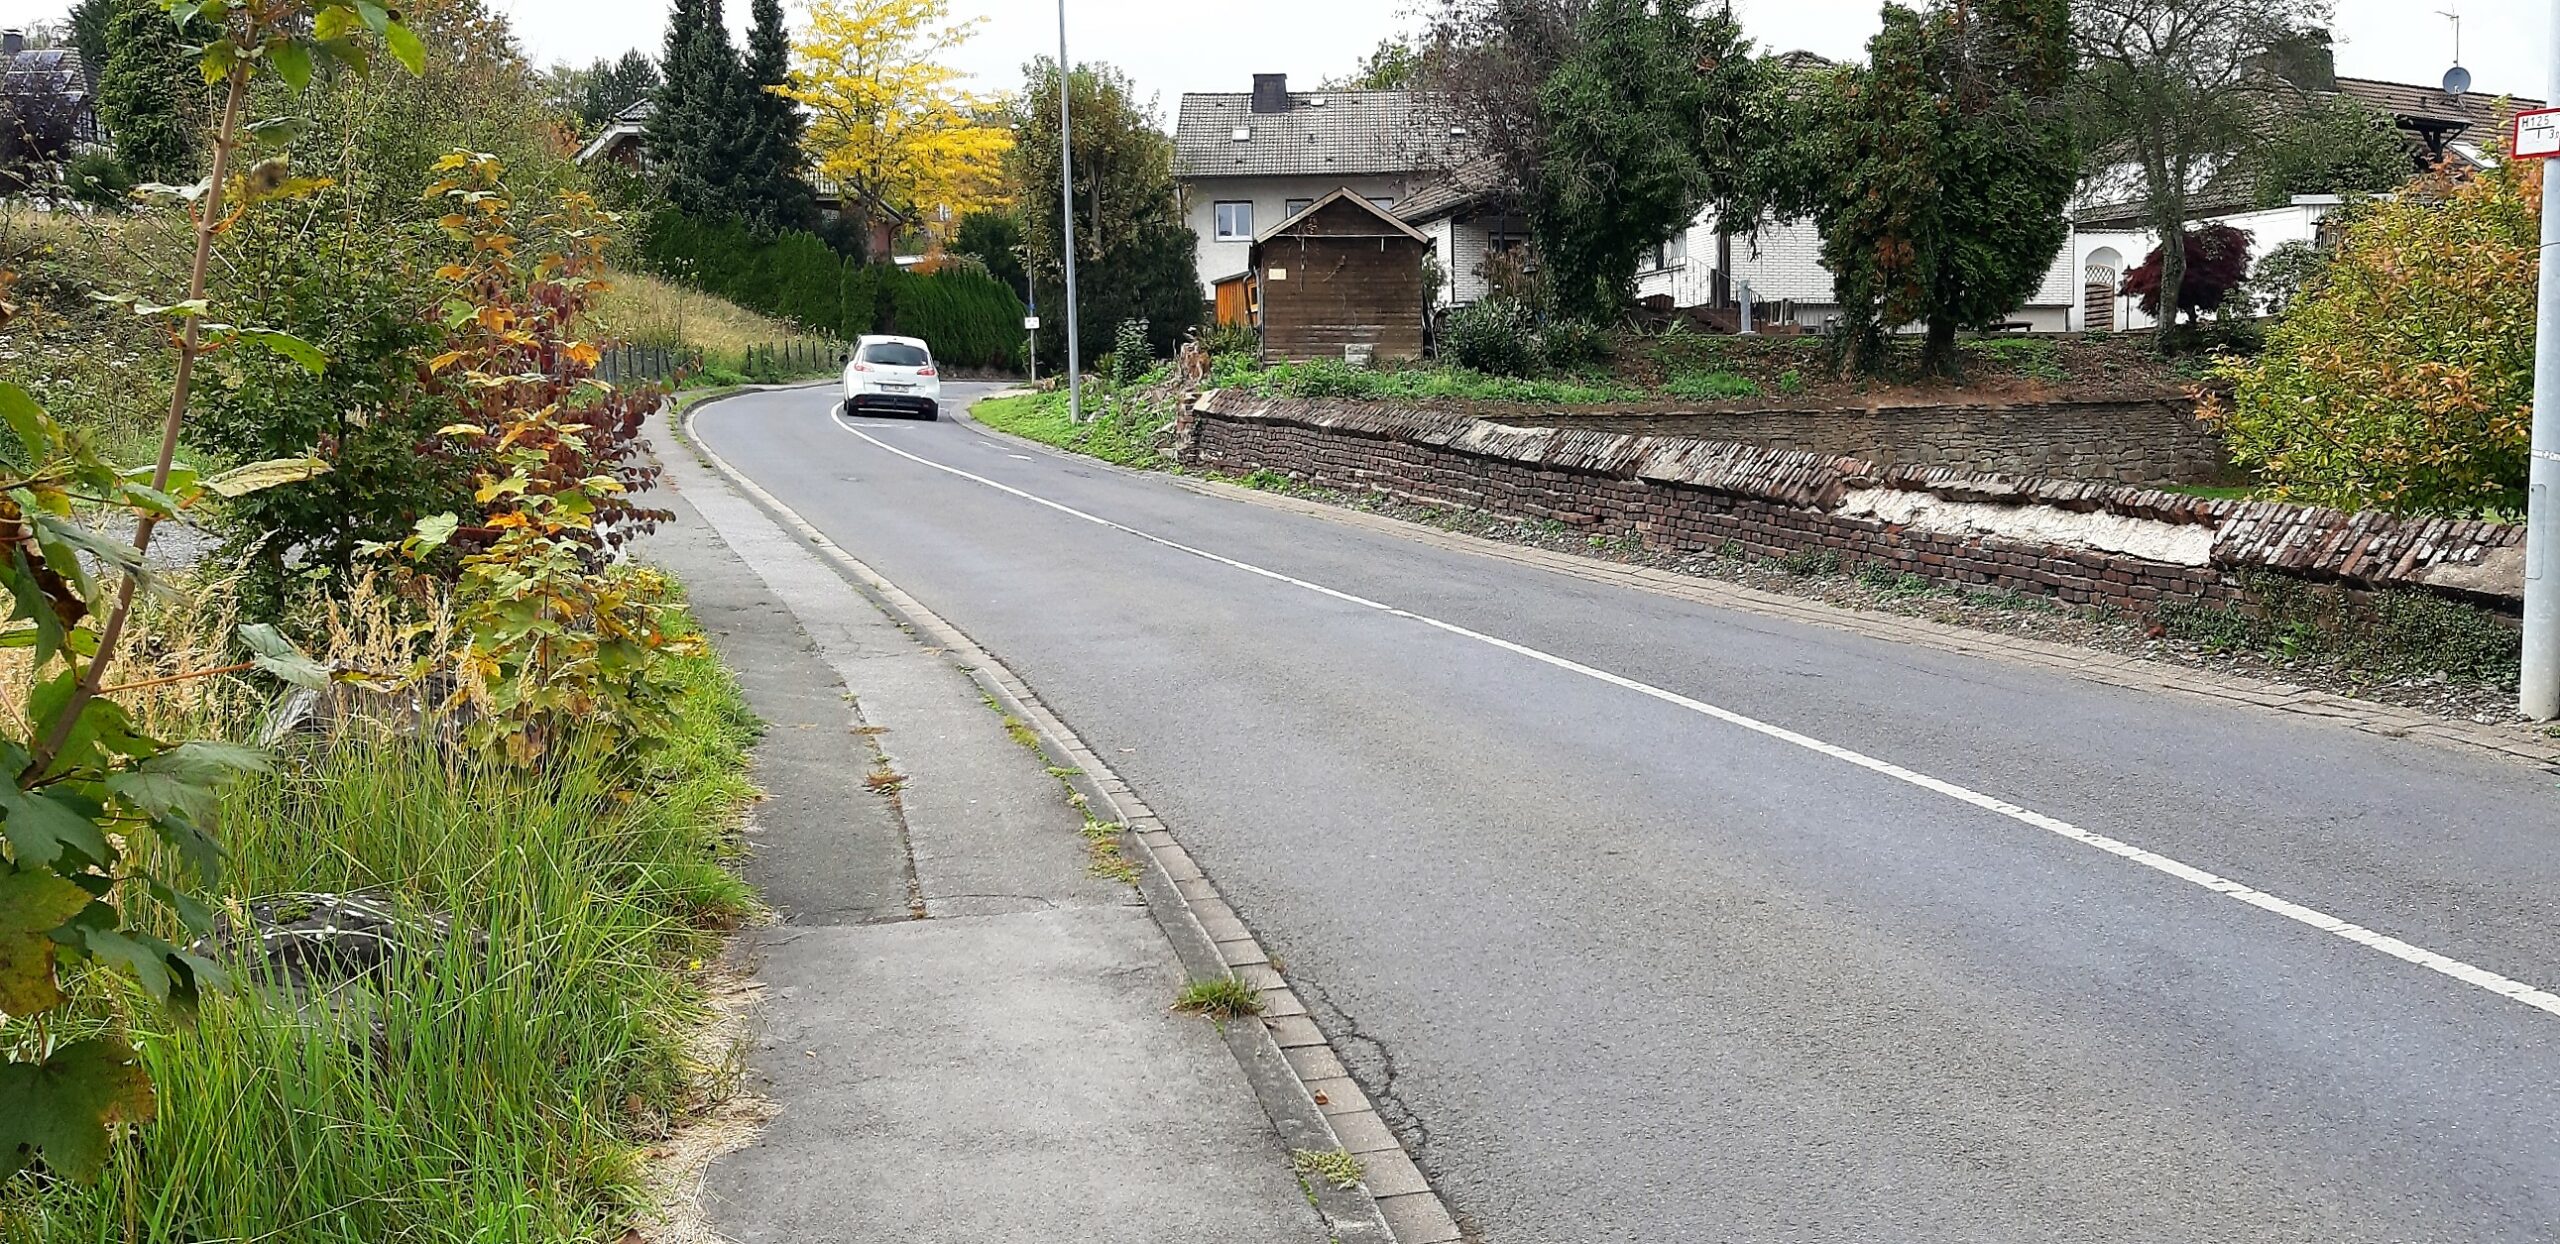 „Der andere fuhr auf der Gegenspur“: Frontalkollision auf Ostbürener Str. in Fröndenberg